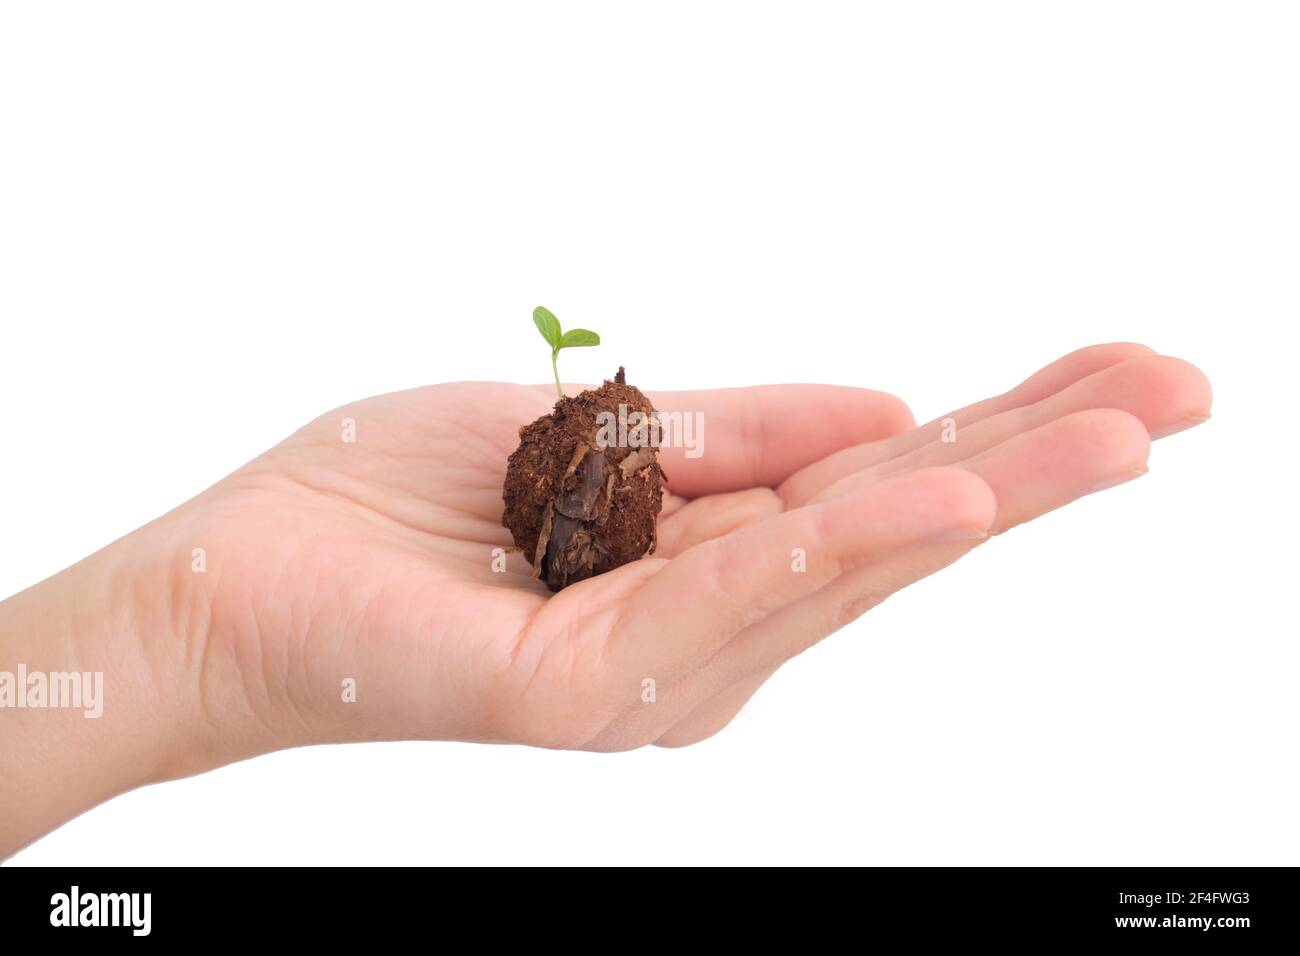 Germoglio verde che cresce dal suolo in mano umana, isolato su sfondo bianco Foto Stock